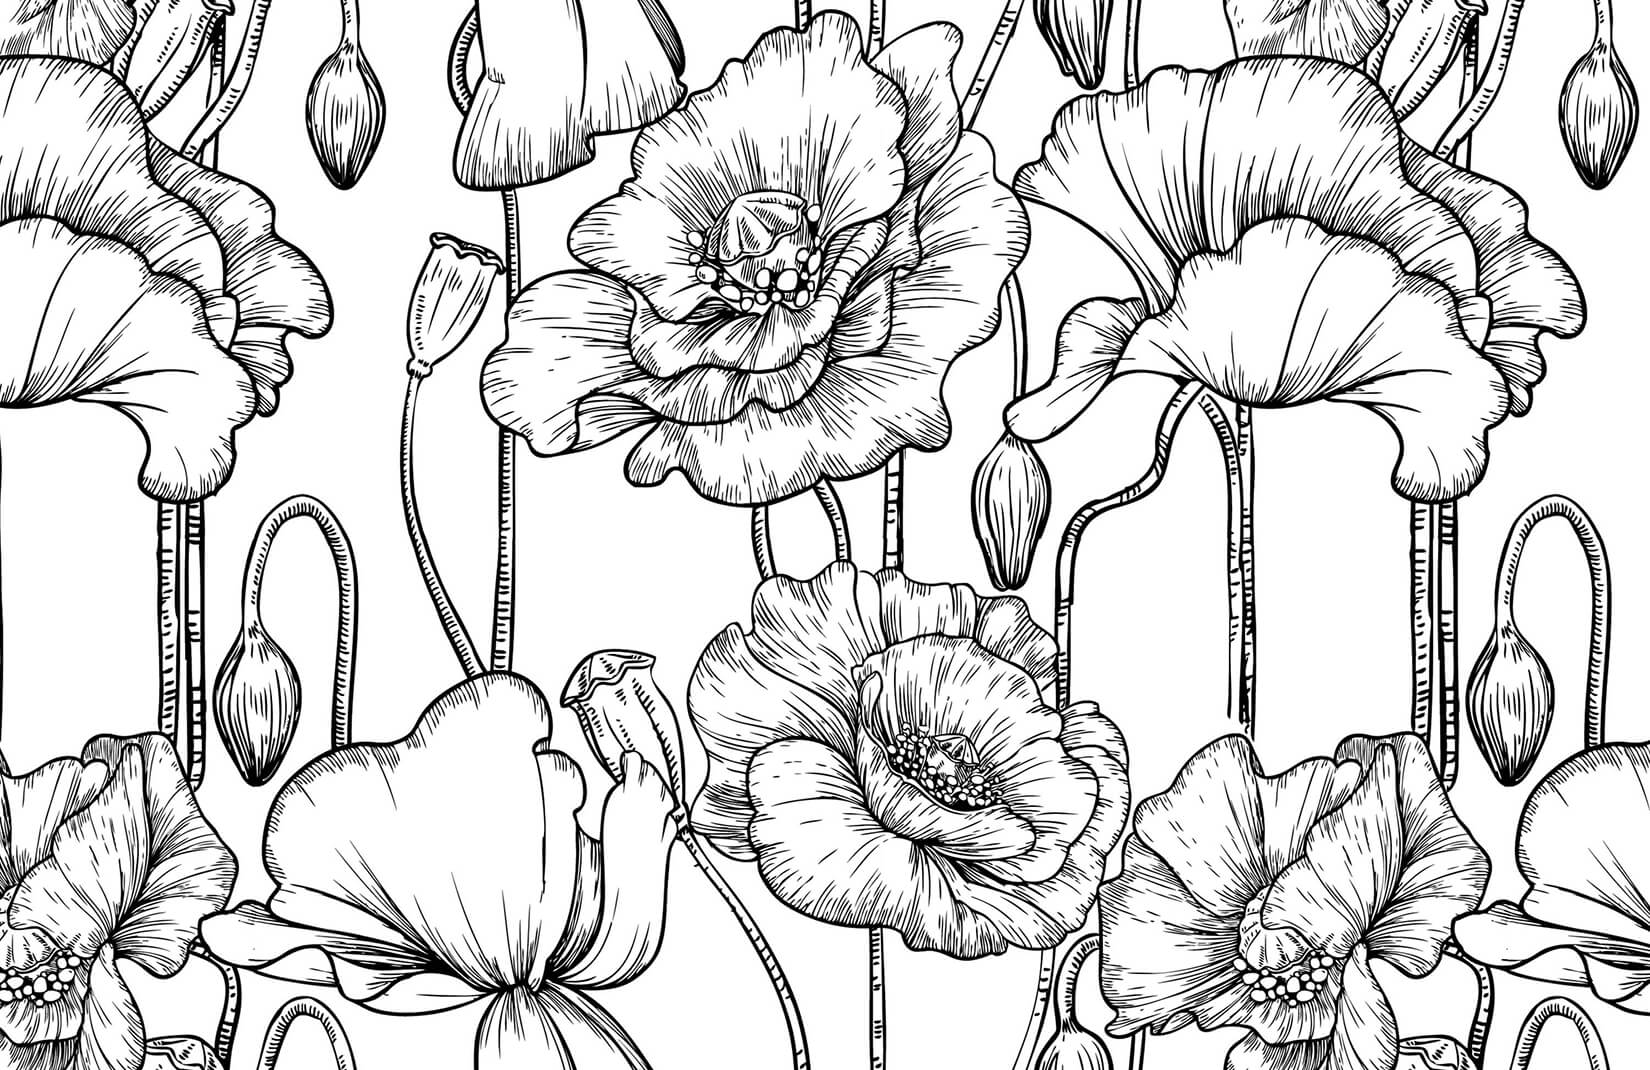 Flowers Black and White Logo - Black and White Illustrated Flowers Mural. MuralsWallpaper.co.uk